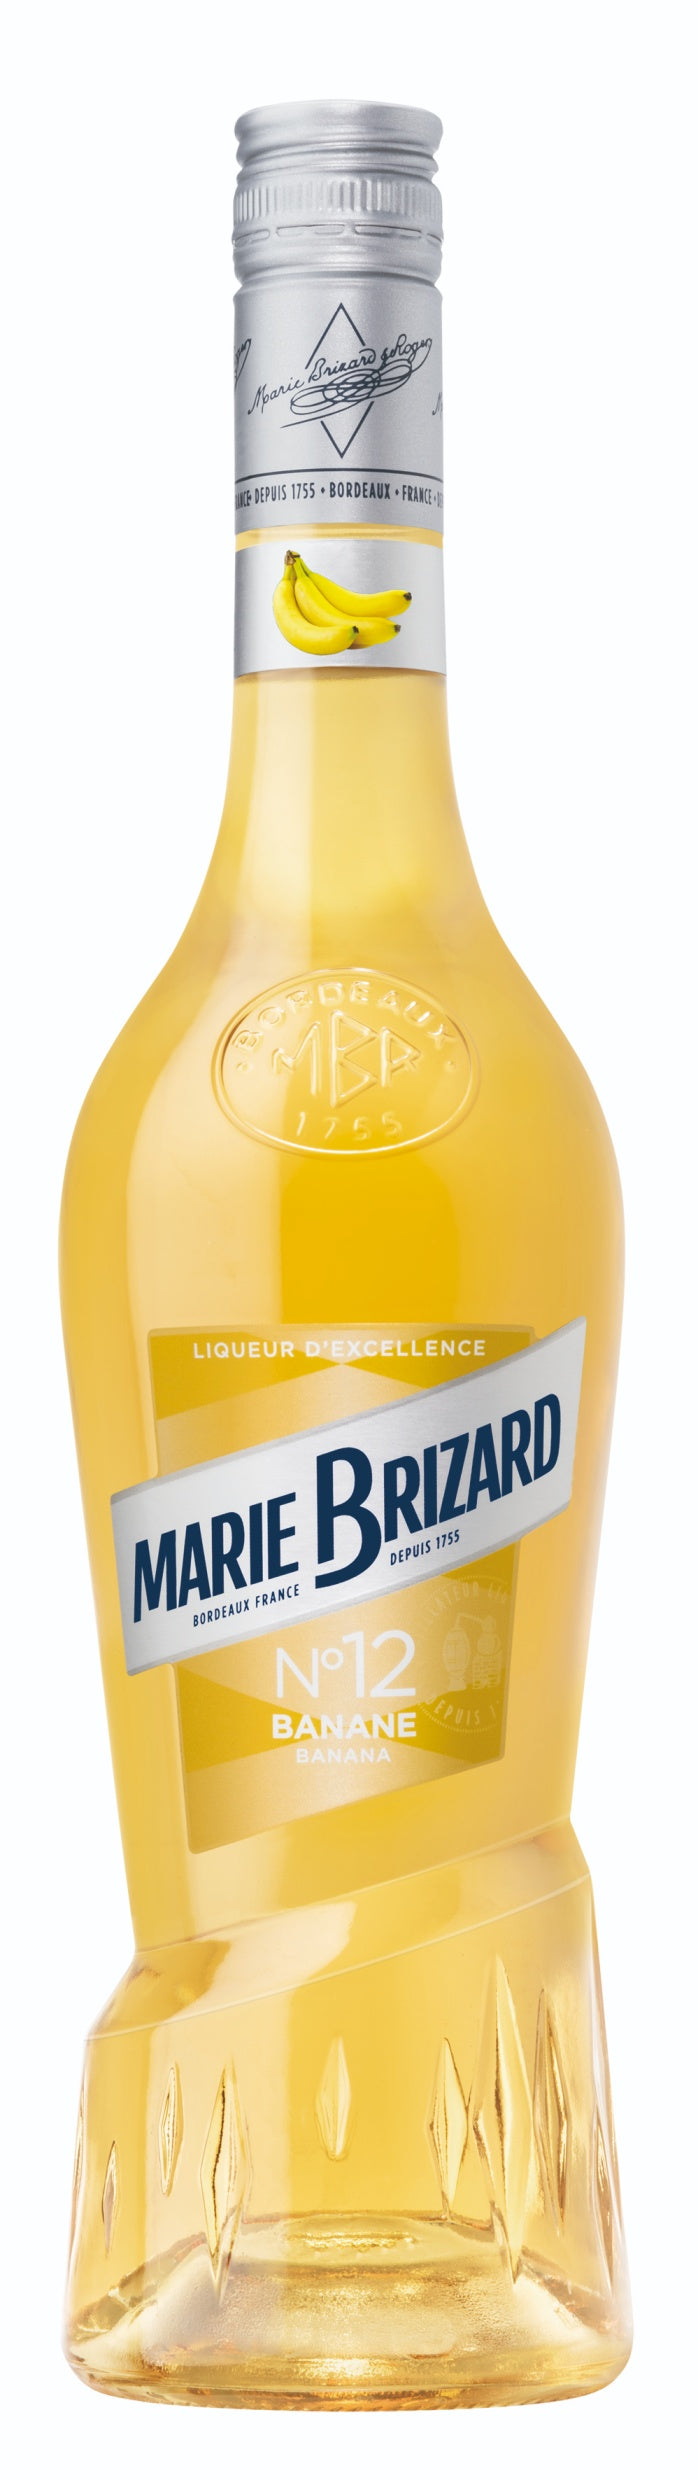 MARIE BRIZARD LIQUEUR CREME DE BANANE 70CL